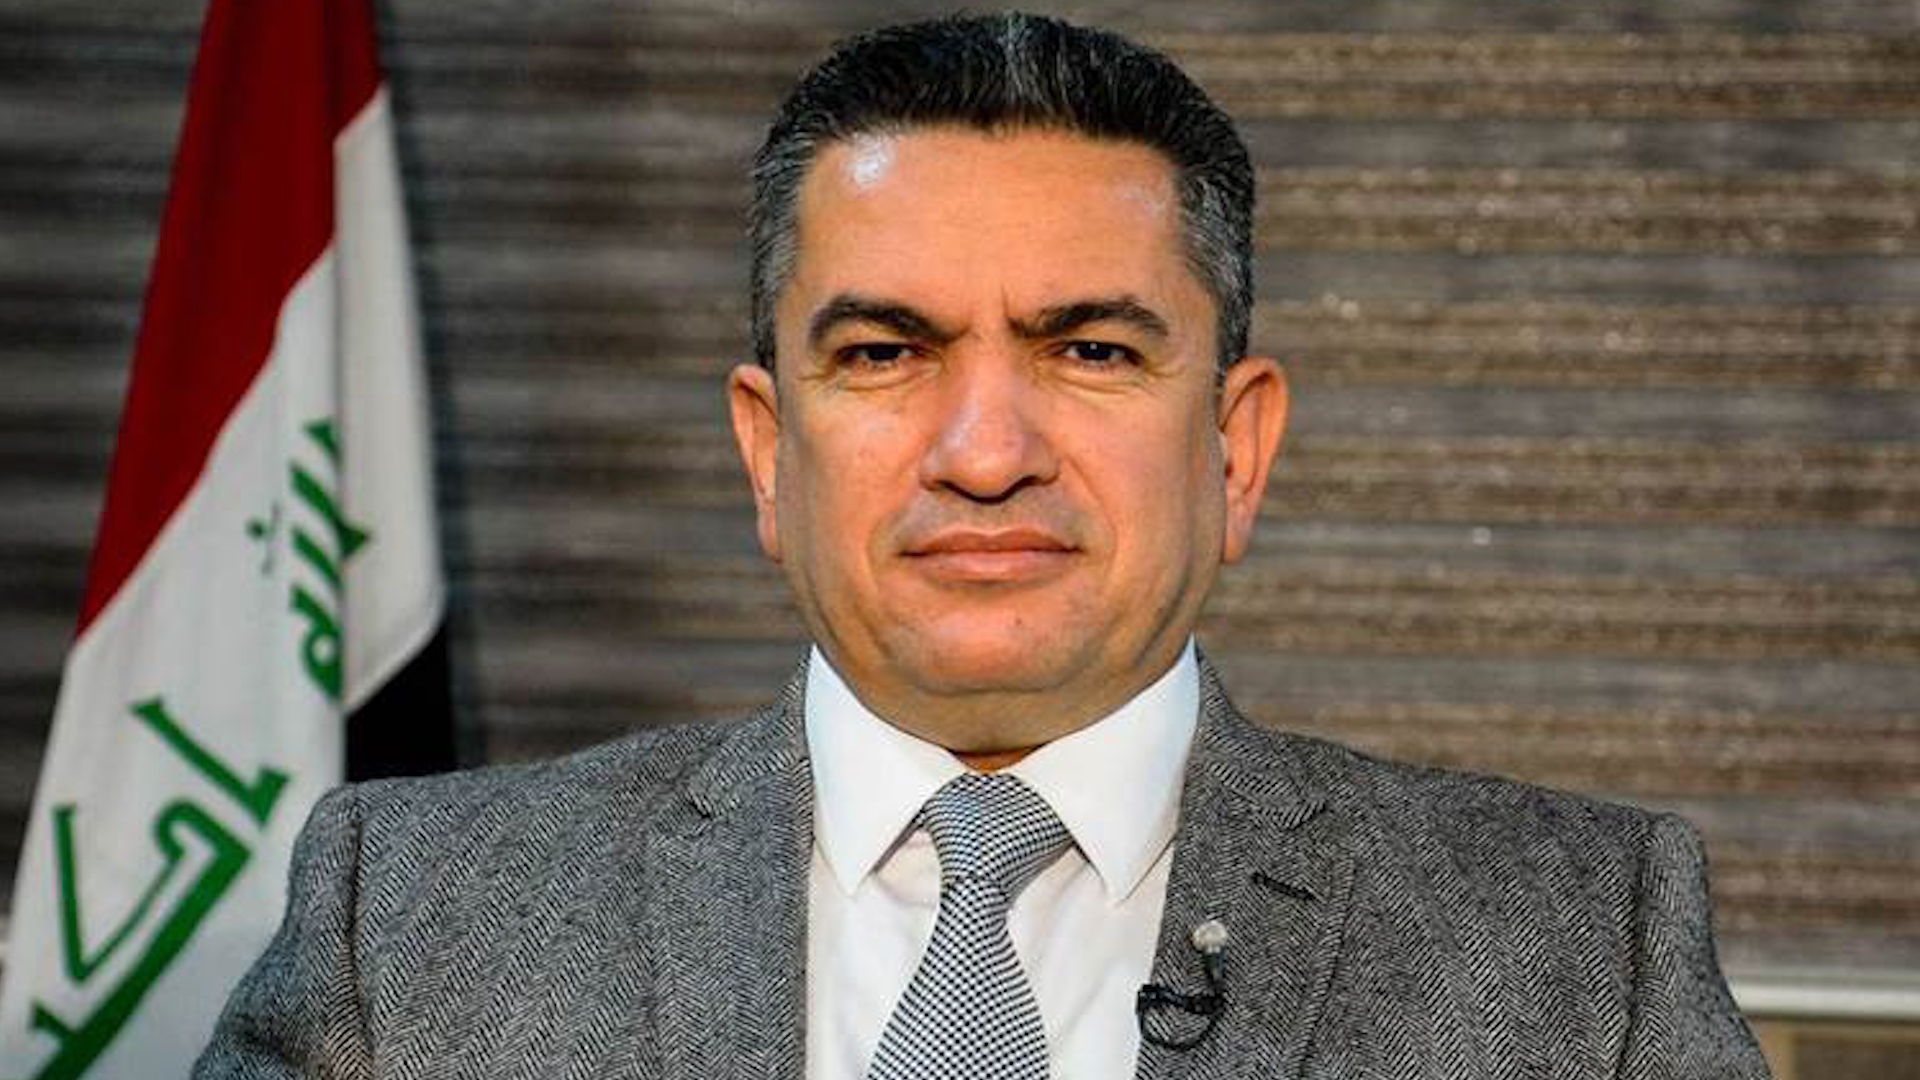 Премьер министр ирана. Аднан аз-Зурфи. Премьер министр Ирака. Аднан Хусейн азербайджанец.